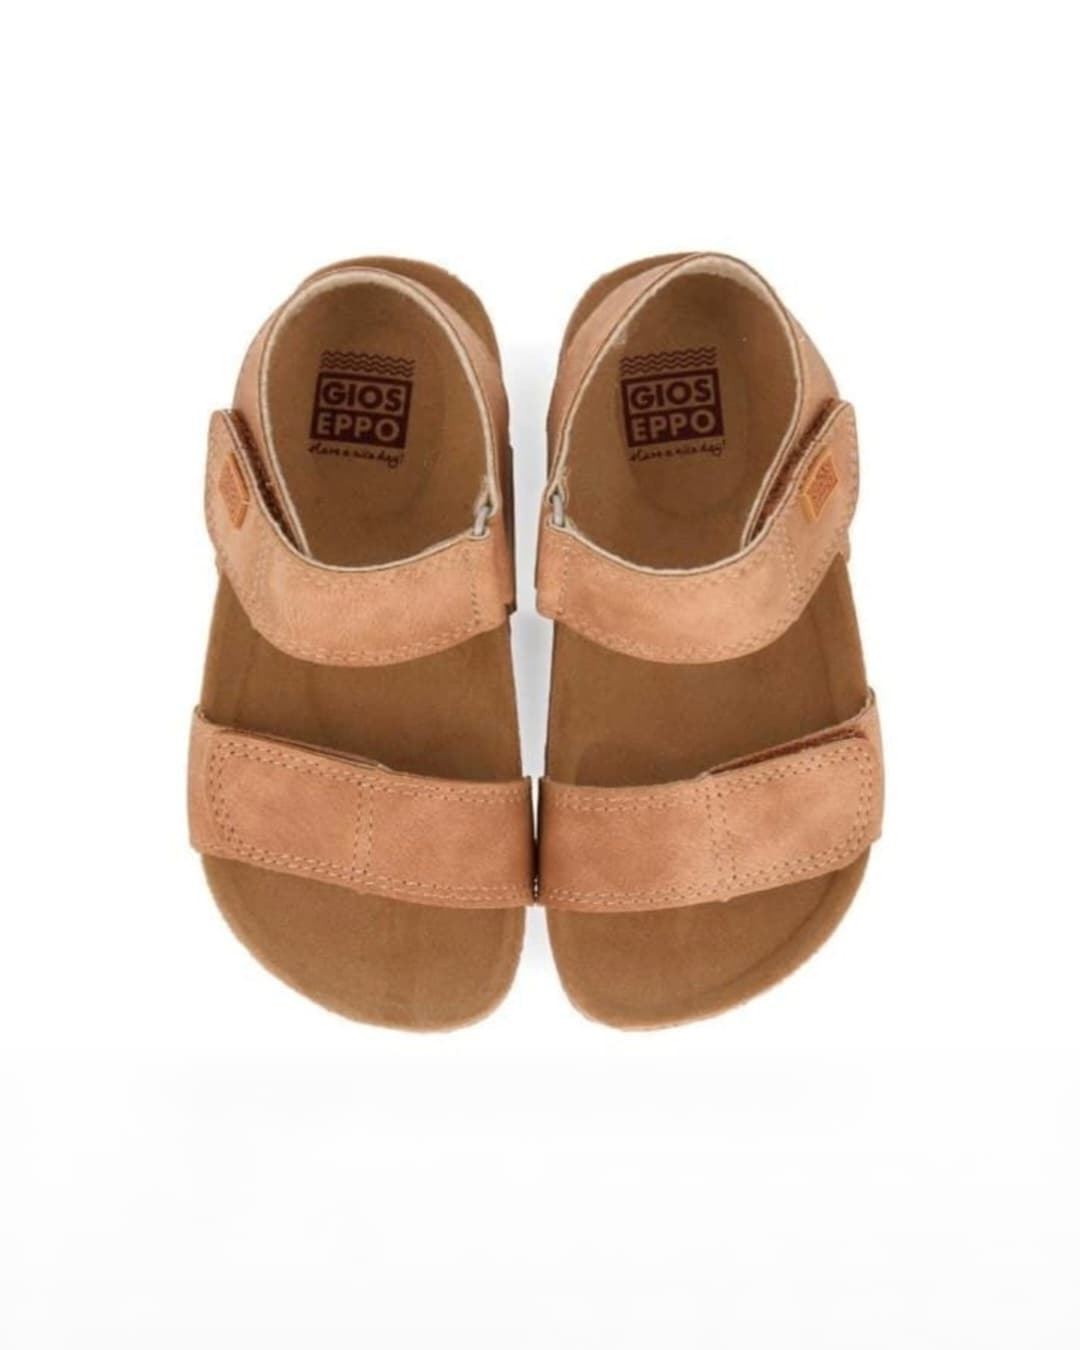 Gioseppo Children's Bio Sandals Color Leather Tredegar - Image 2